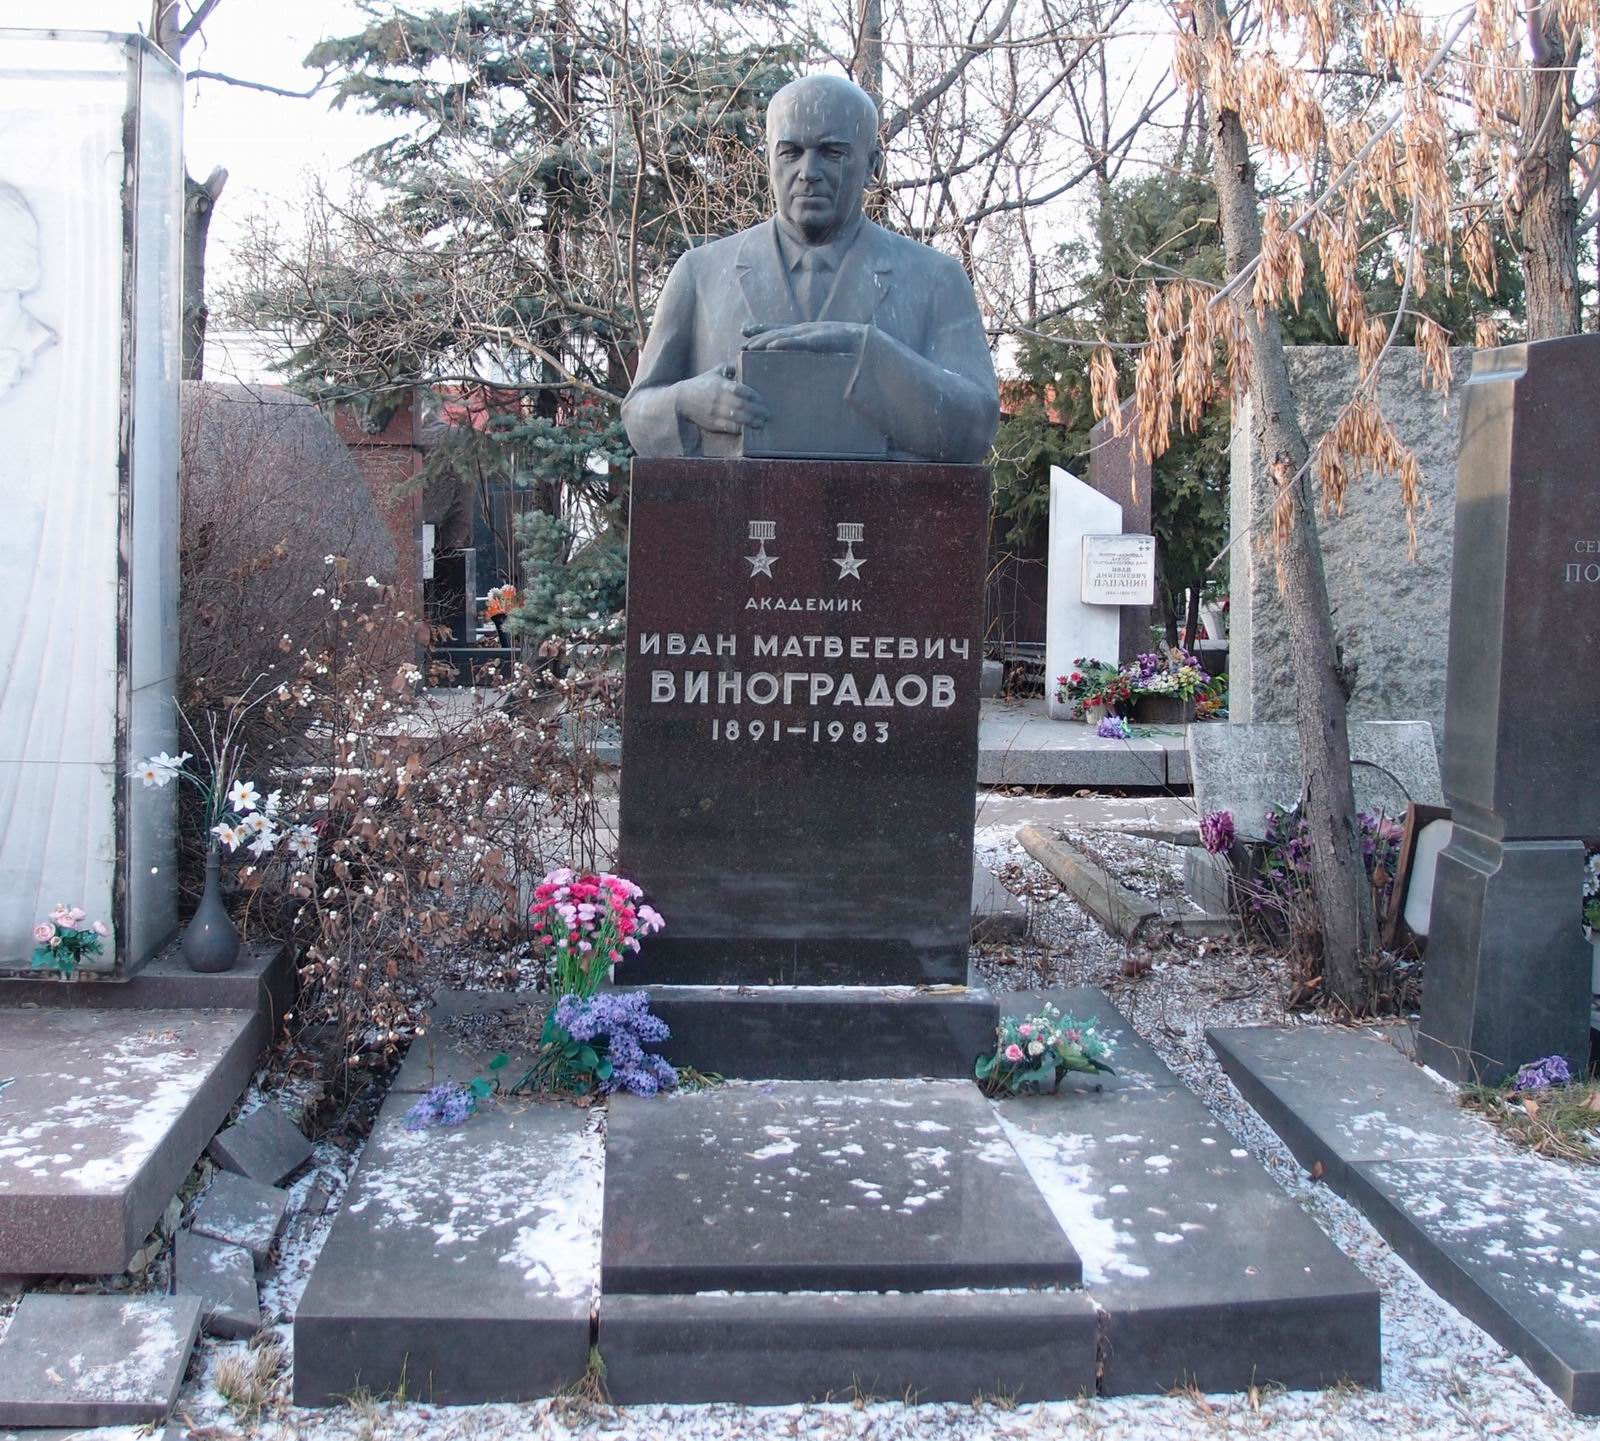 Памятник на могиле Виноградова И.М. (1891-1983), ск. В.Сонин, на Новодевичьем кладбище (10-1-13).